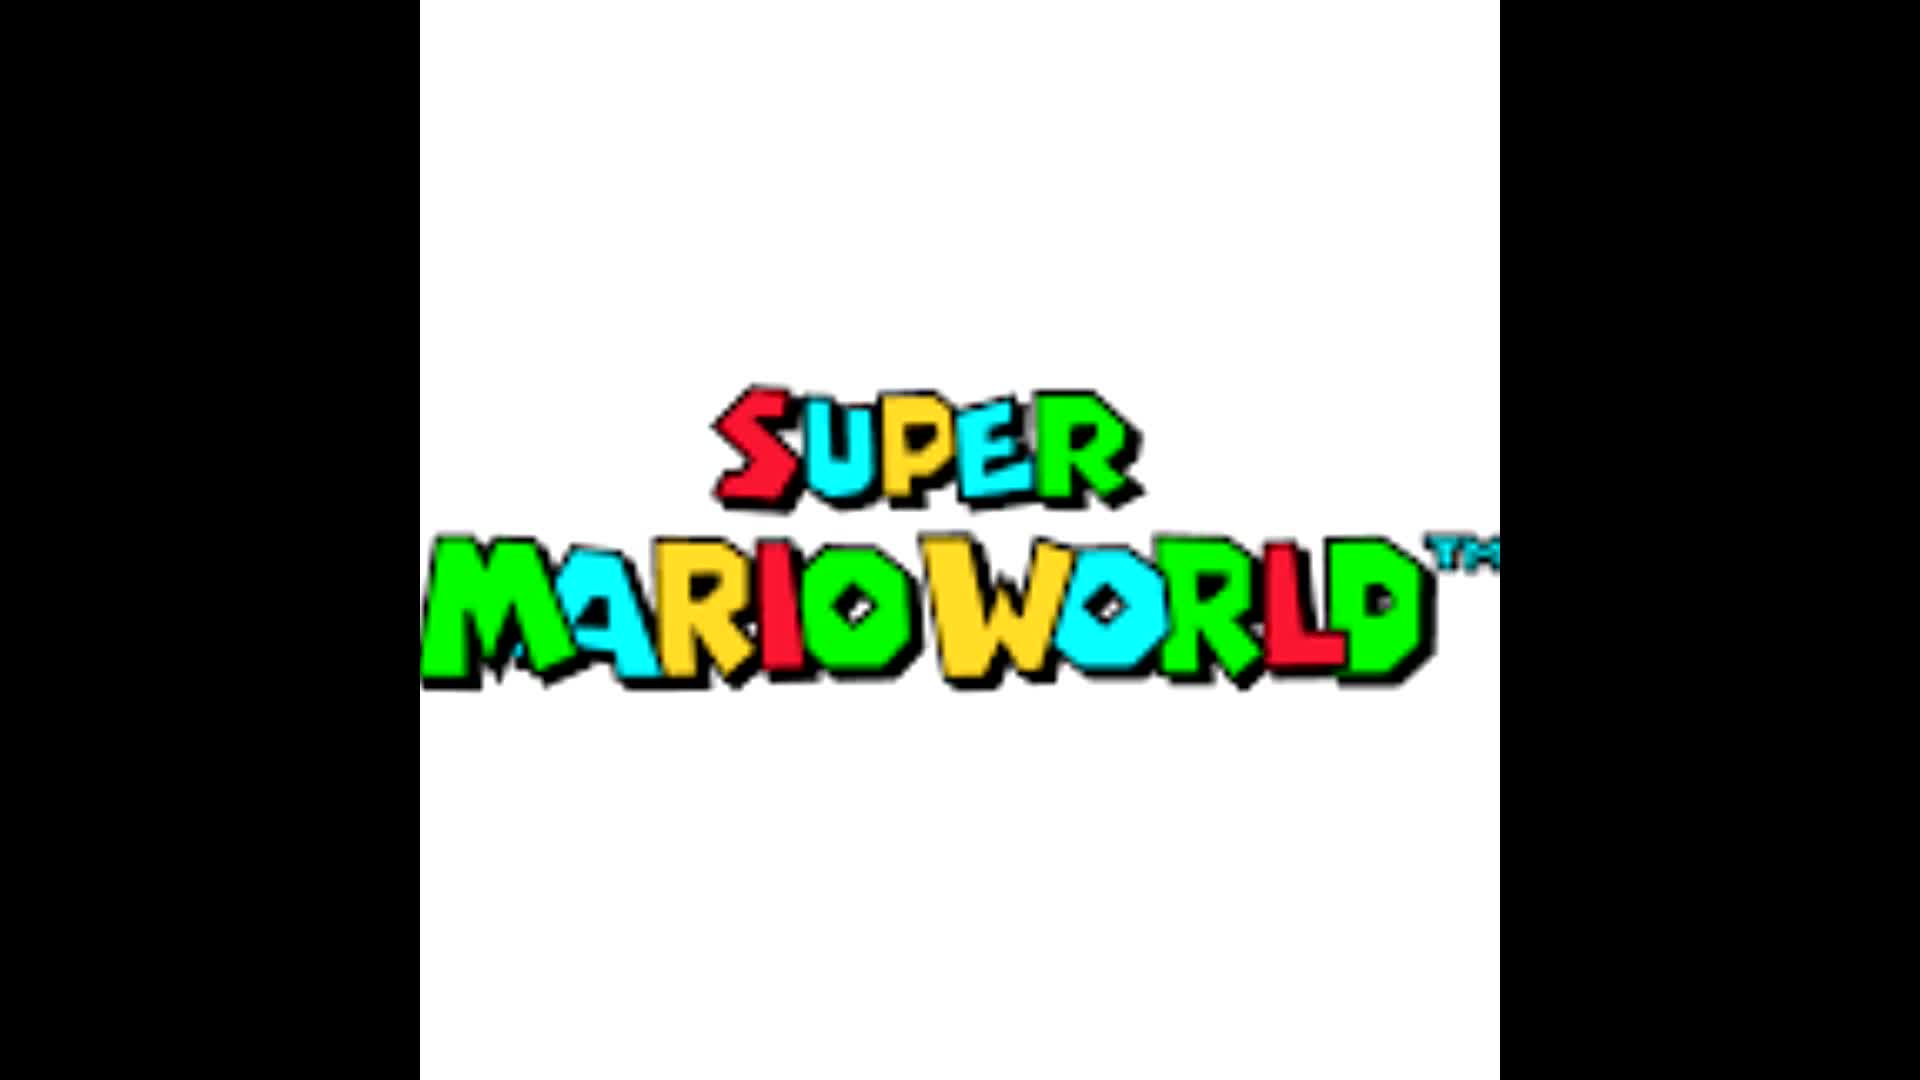 Title - Super Mario World